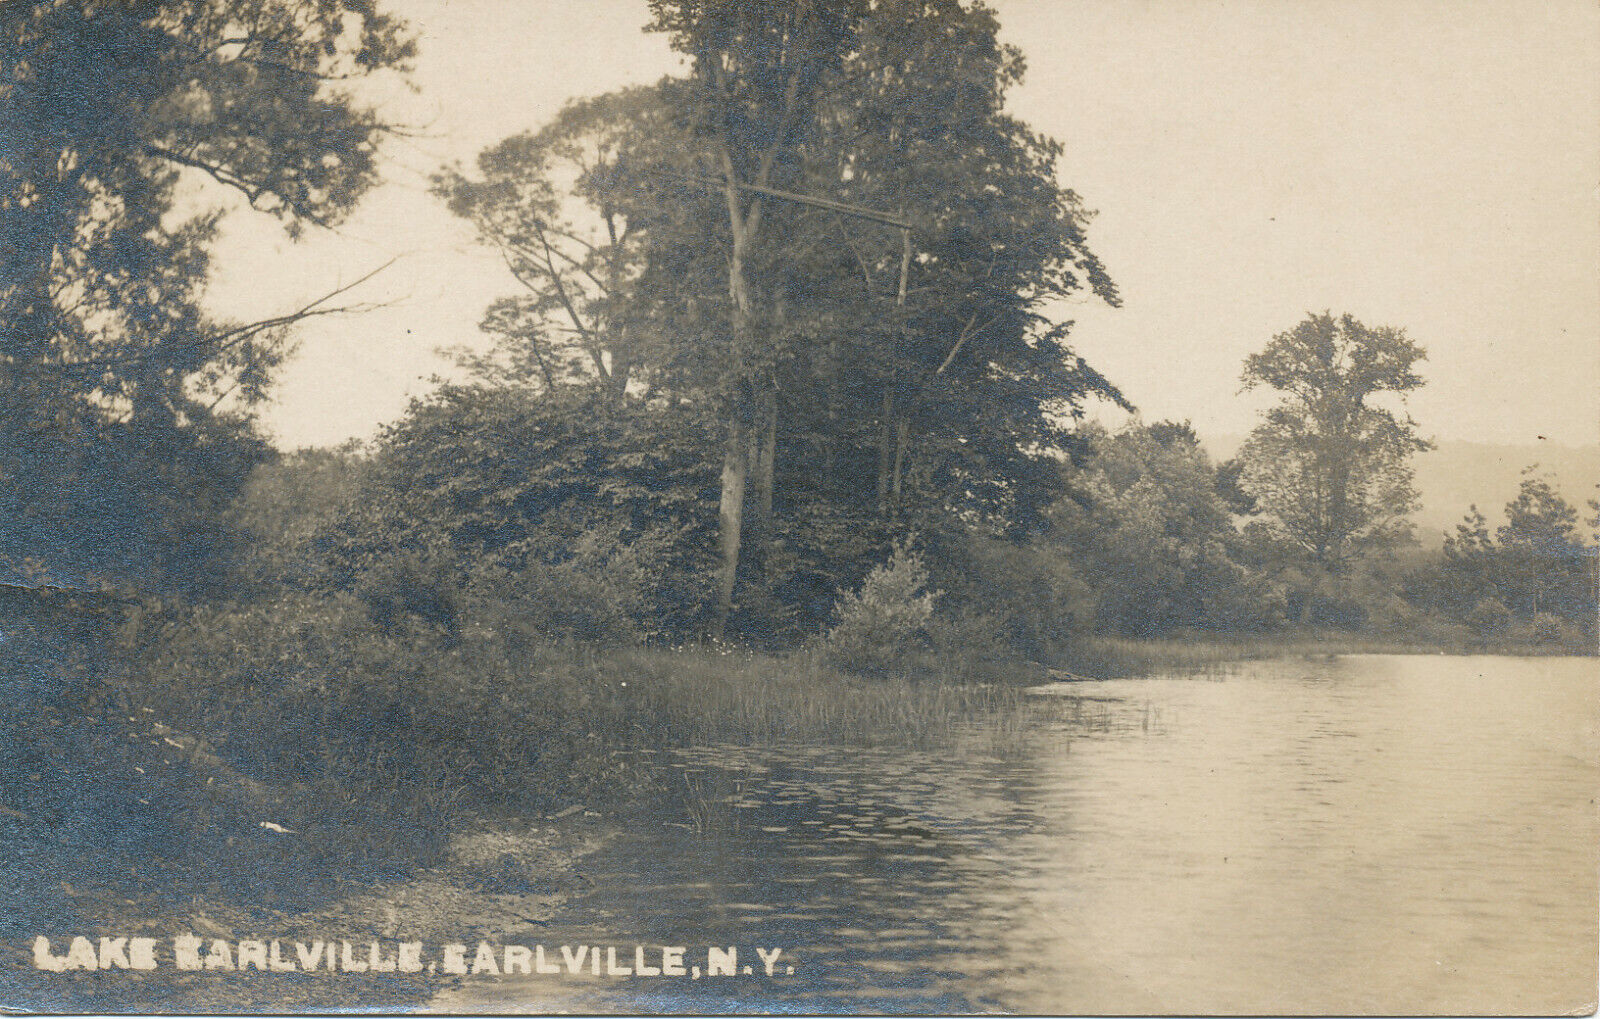 Earlville NY * Lake Earlville  RPPC  1918 * Madison Chenango Co. Sherburne